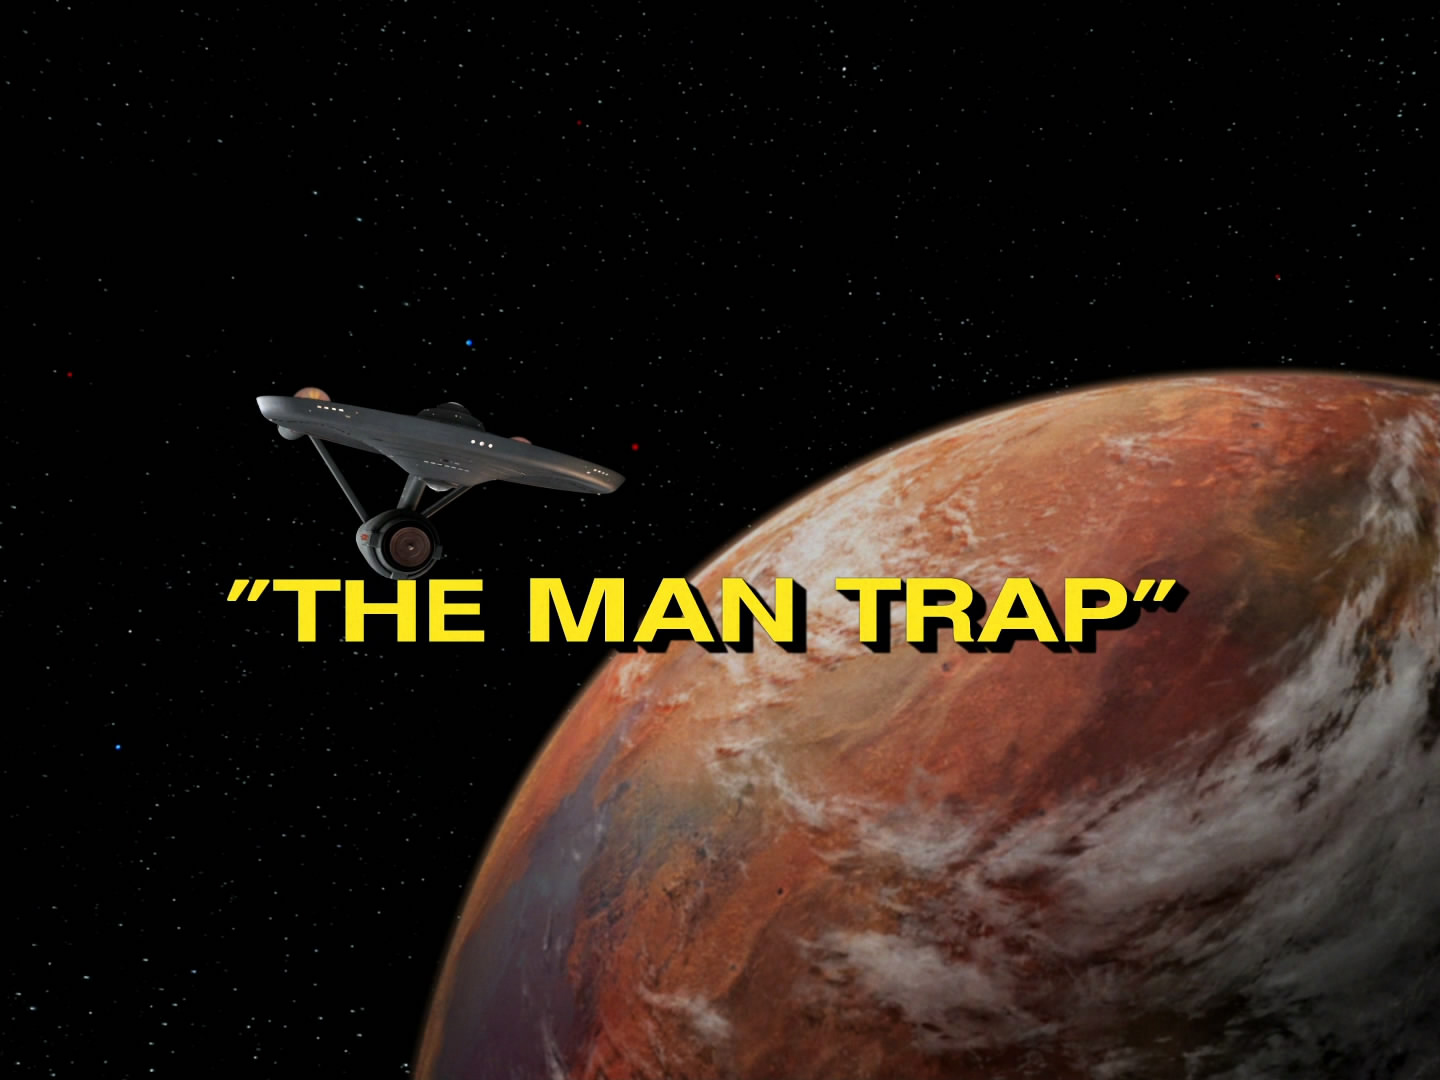 Retro-Rezension: Star Trek: The Original Series 1x01- "The Man Trap" / "Das Letzte seiner Art" 3